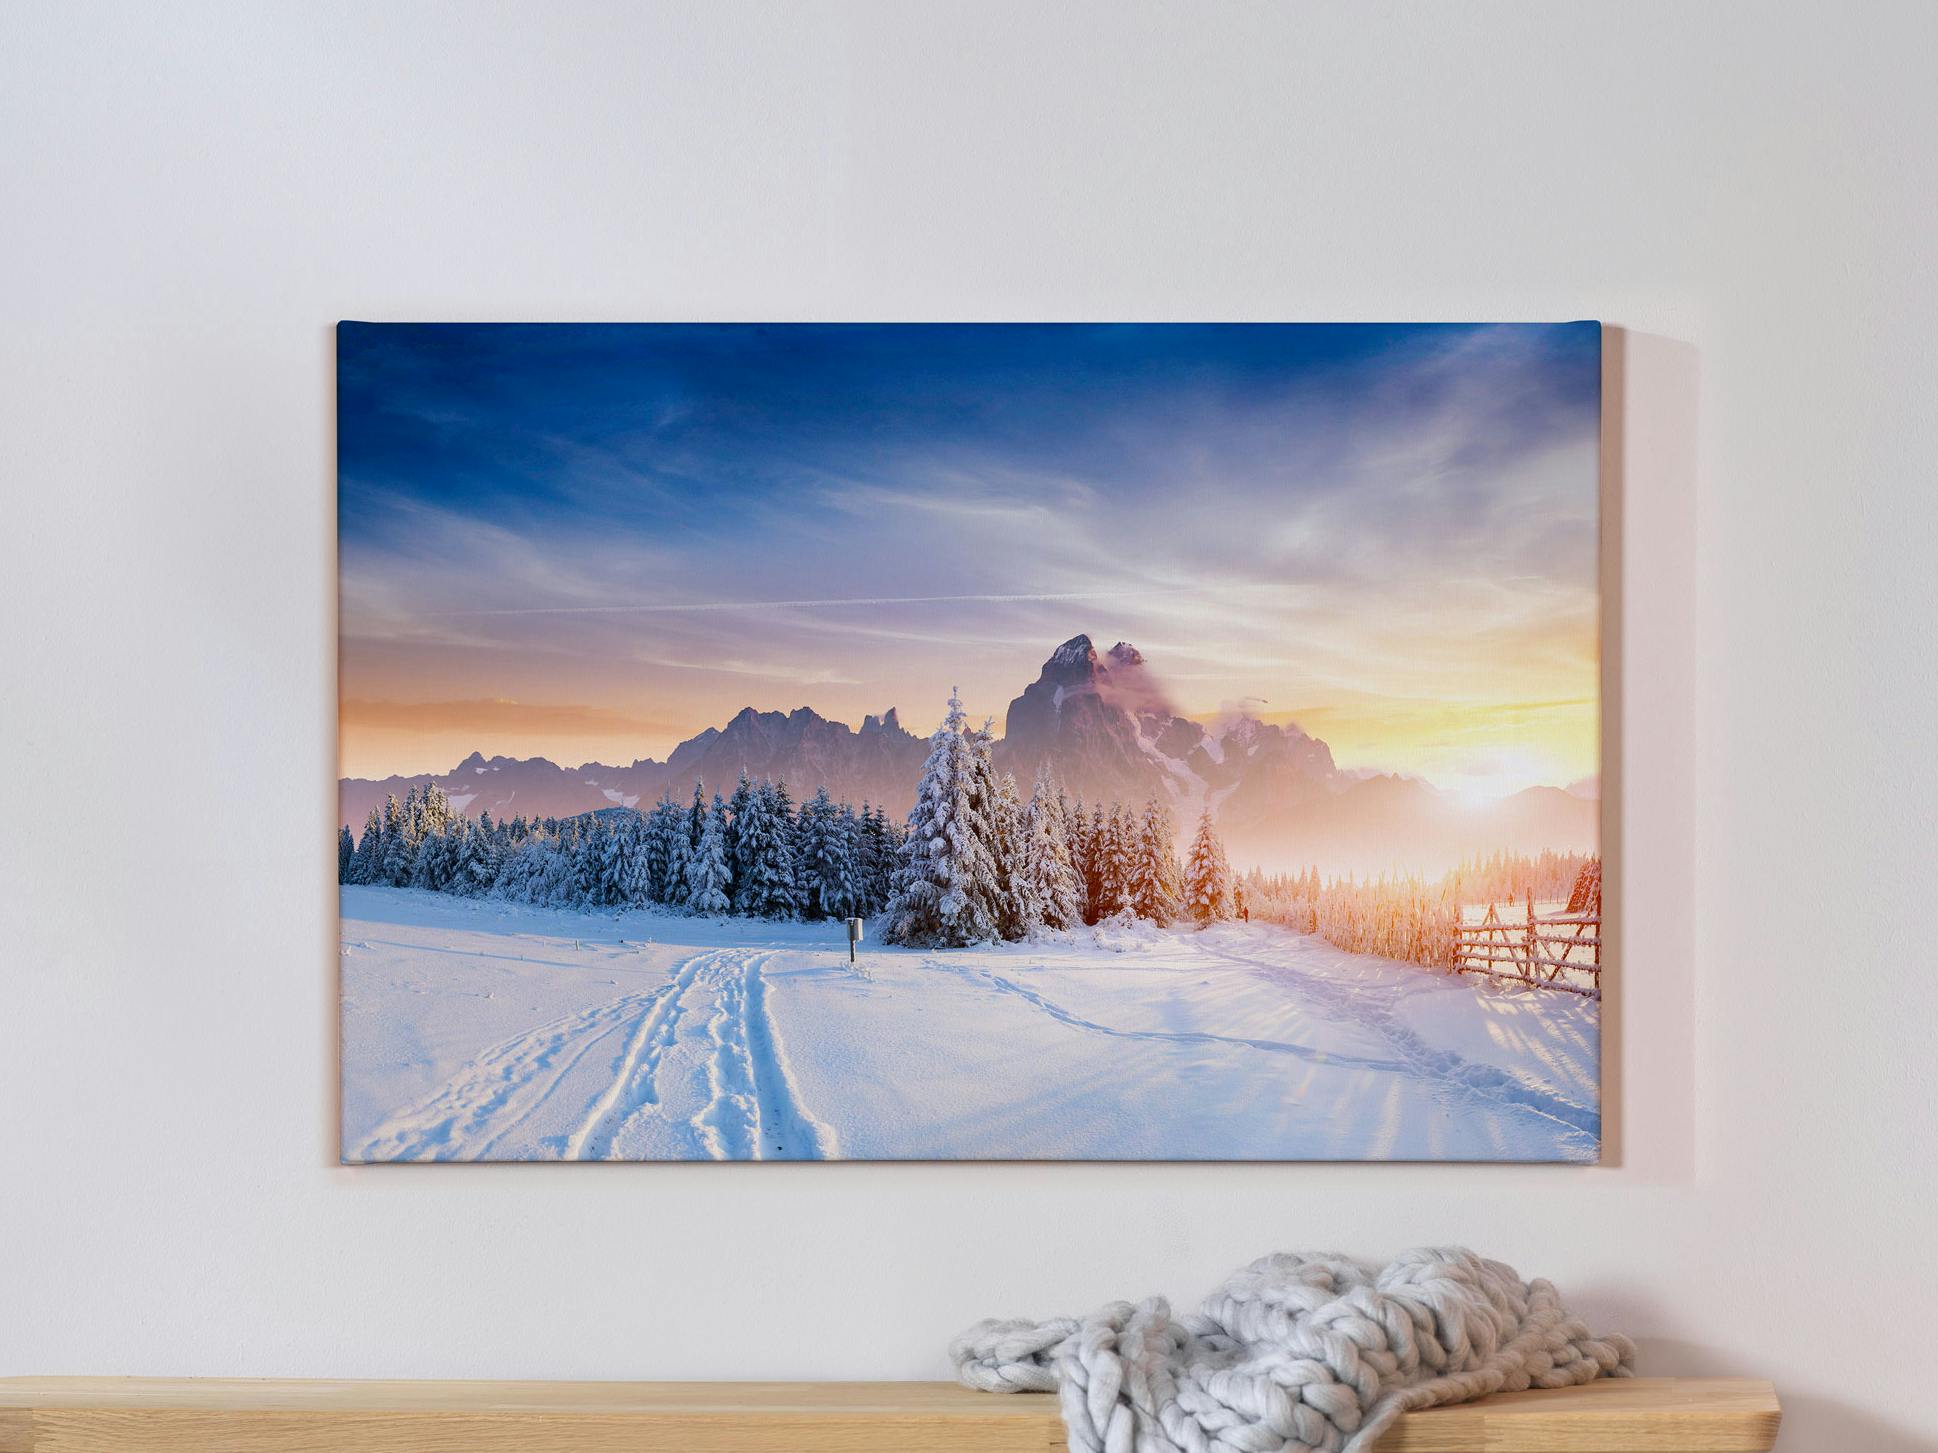 Toile photo avec photo de paysage hivernal sur un mur gris